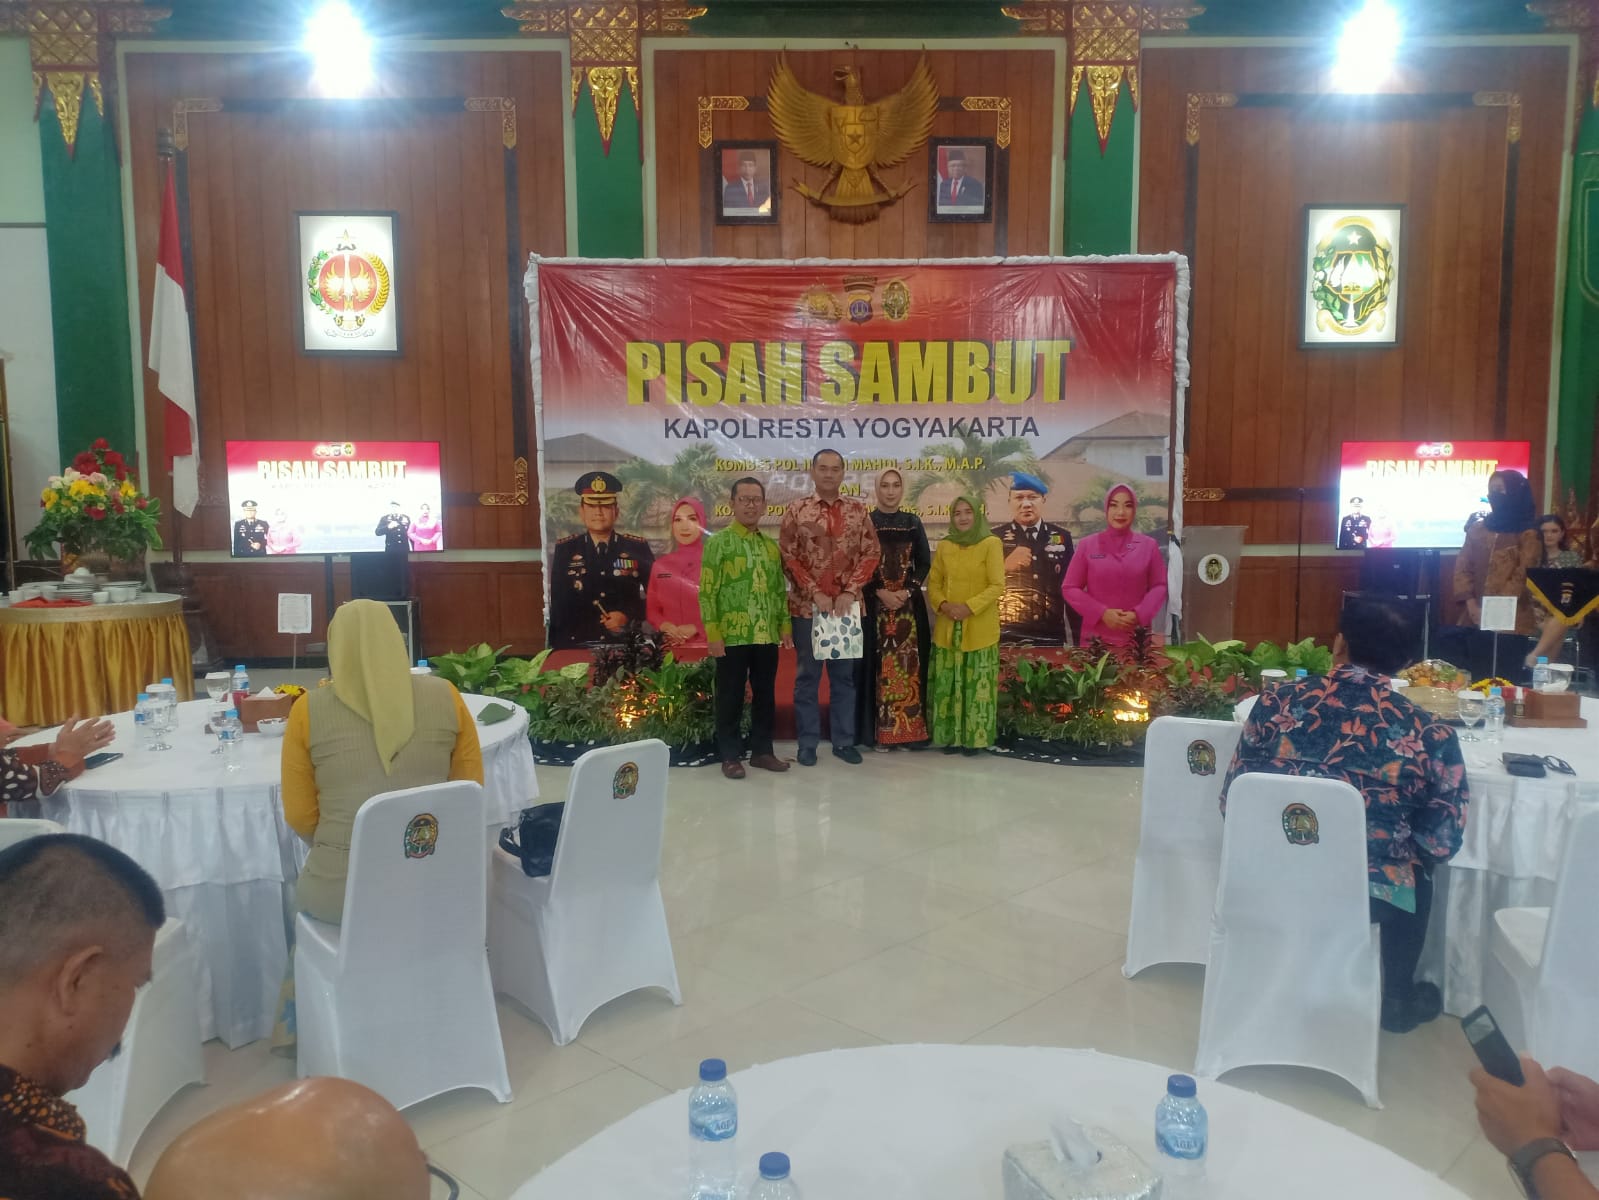 Ketua Pengadilan Negeri Yogyakarta Menghadiri Pisah Sambut Kapolresta Yogyakarta 